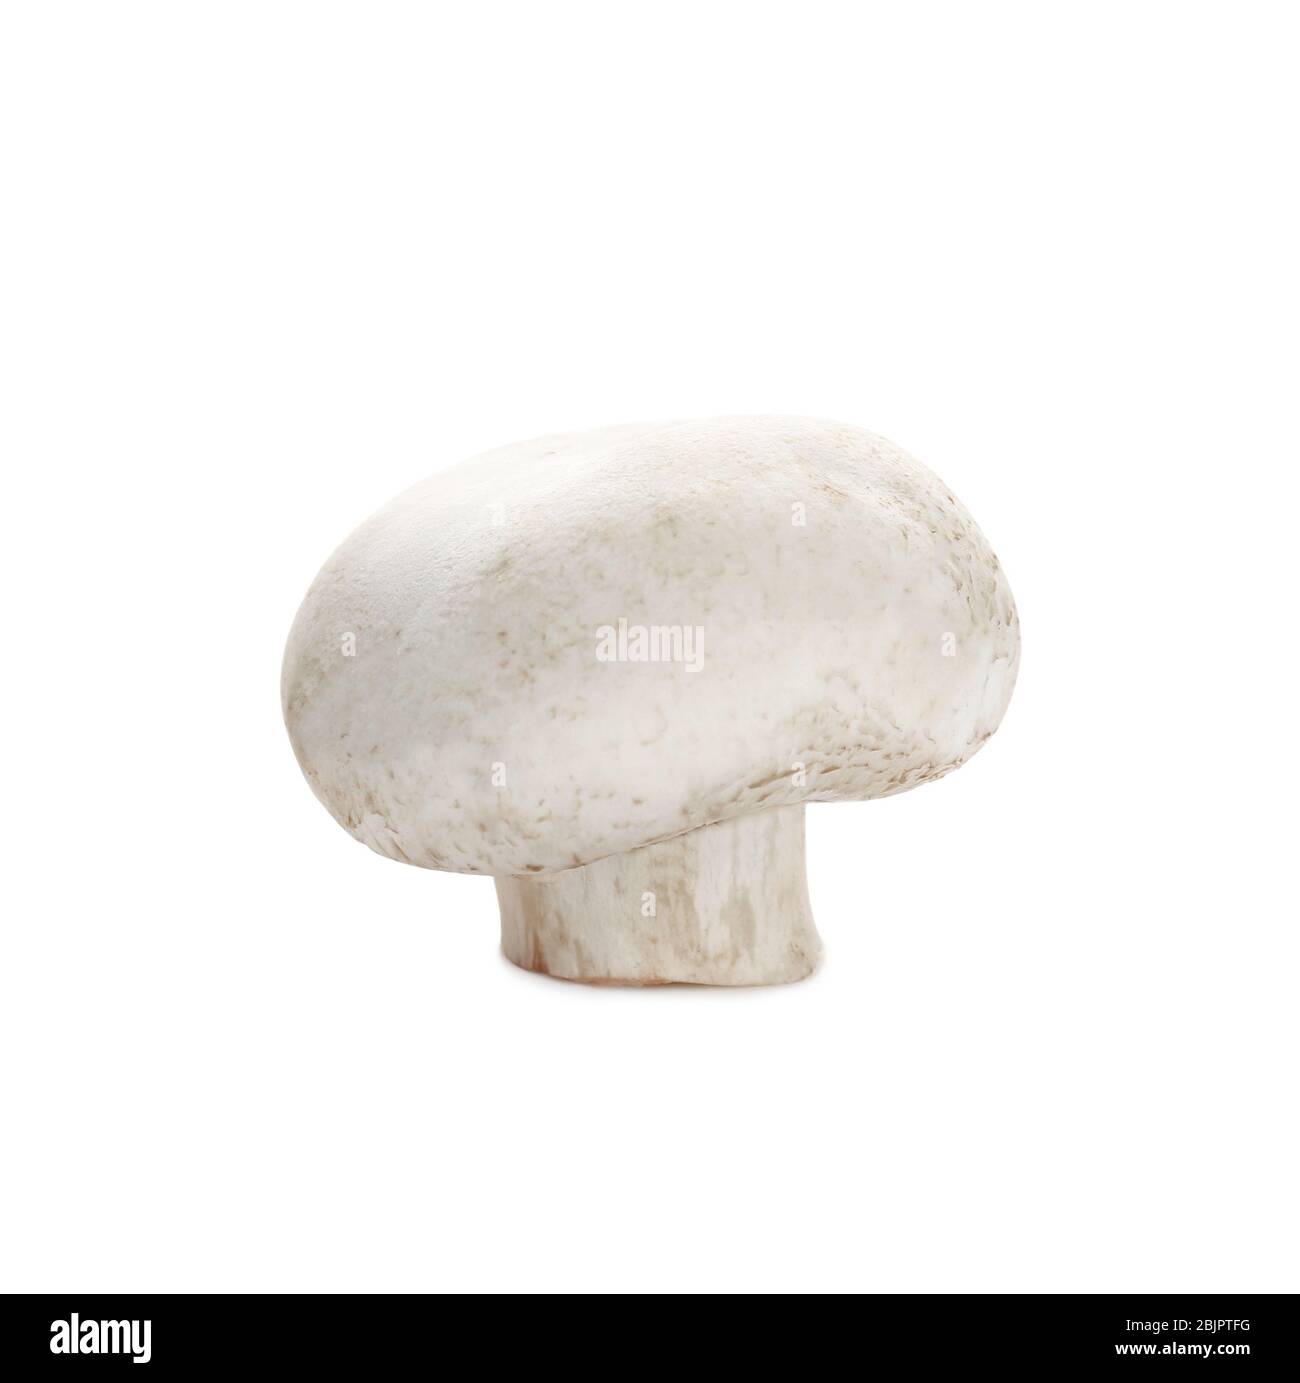 Raw mushroom on white background Stock Photo